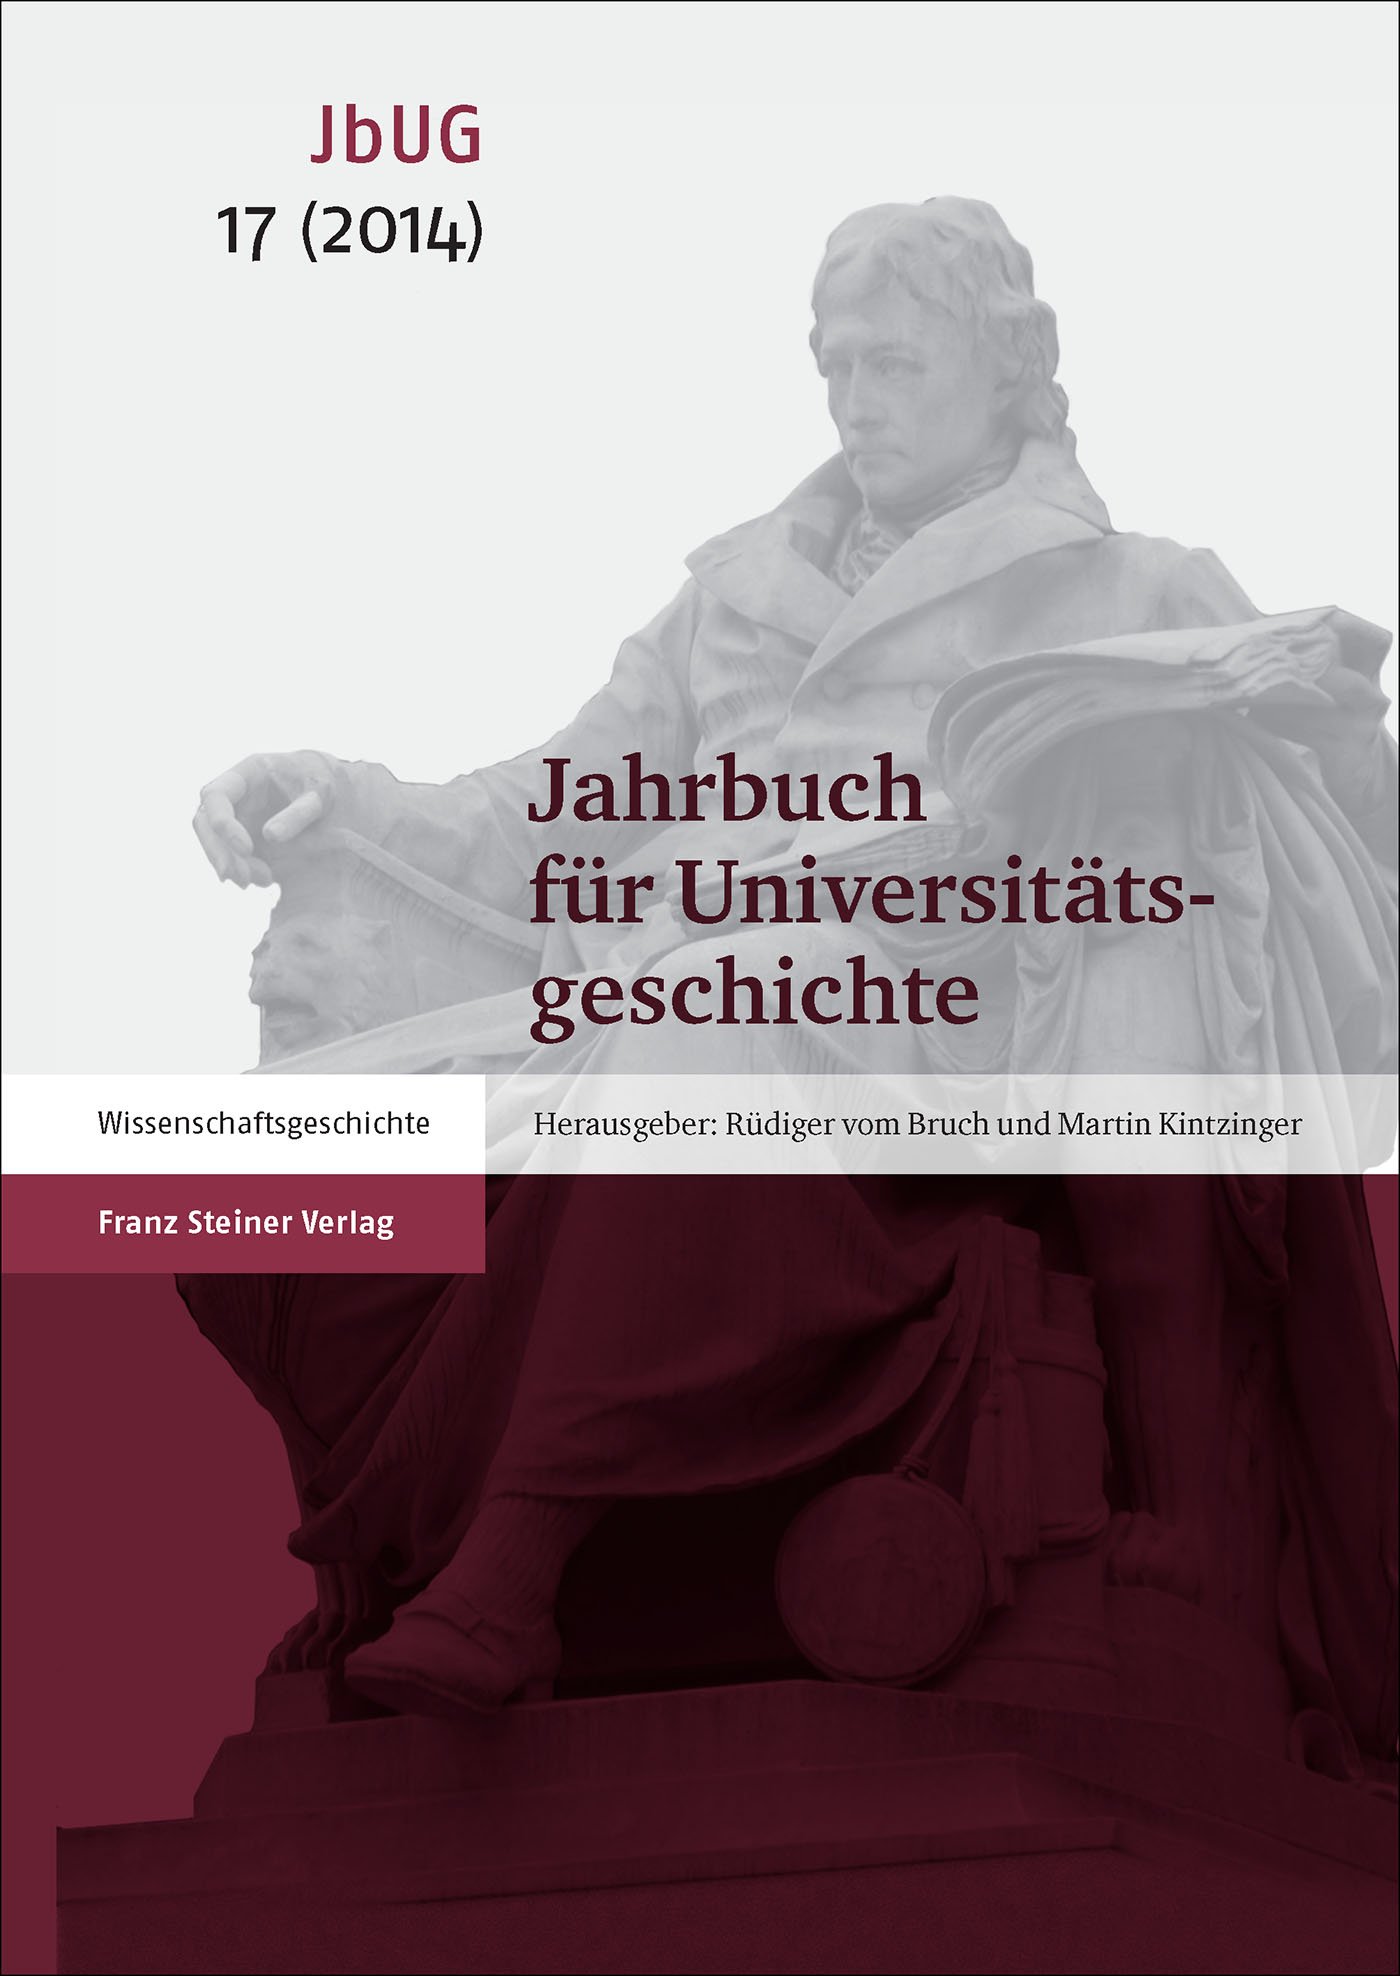 Jahrbuch für Universitätsgeschichte 17 (2014)